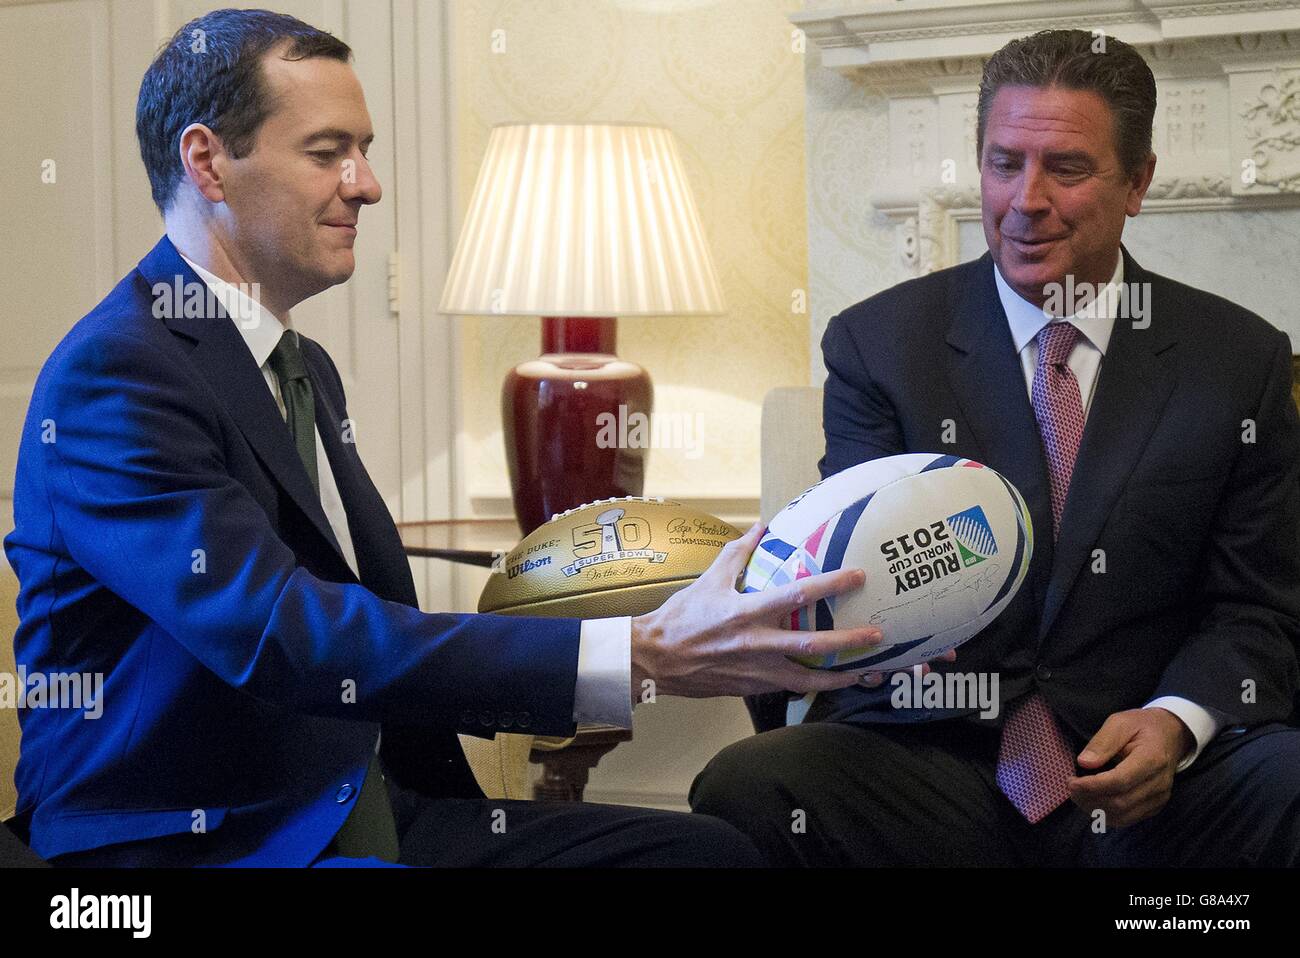 Il Cancelliere dello scacchiere George Osborne consegna una palla di rugby all'ex calciatore americano Dan Marino durante il loro incontro all'interno di 11 Downing Street a Londra prima dei Miami Dolphins incontrando i New York Jets allo stadio di Wembley la domenica. Foto Stock